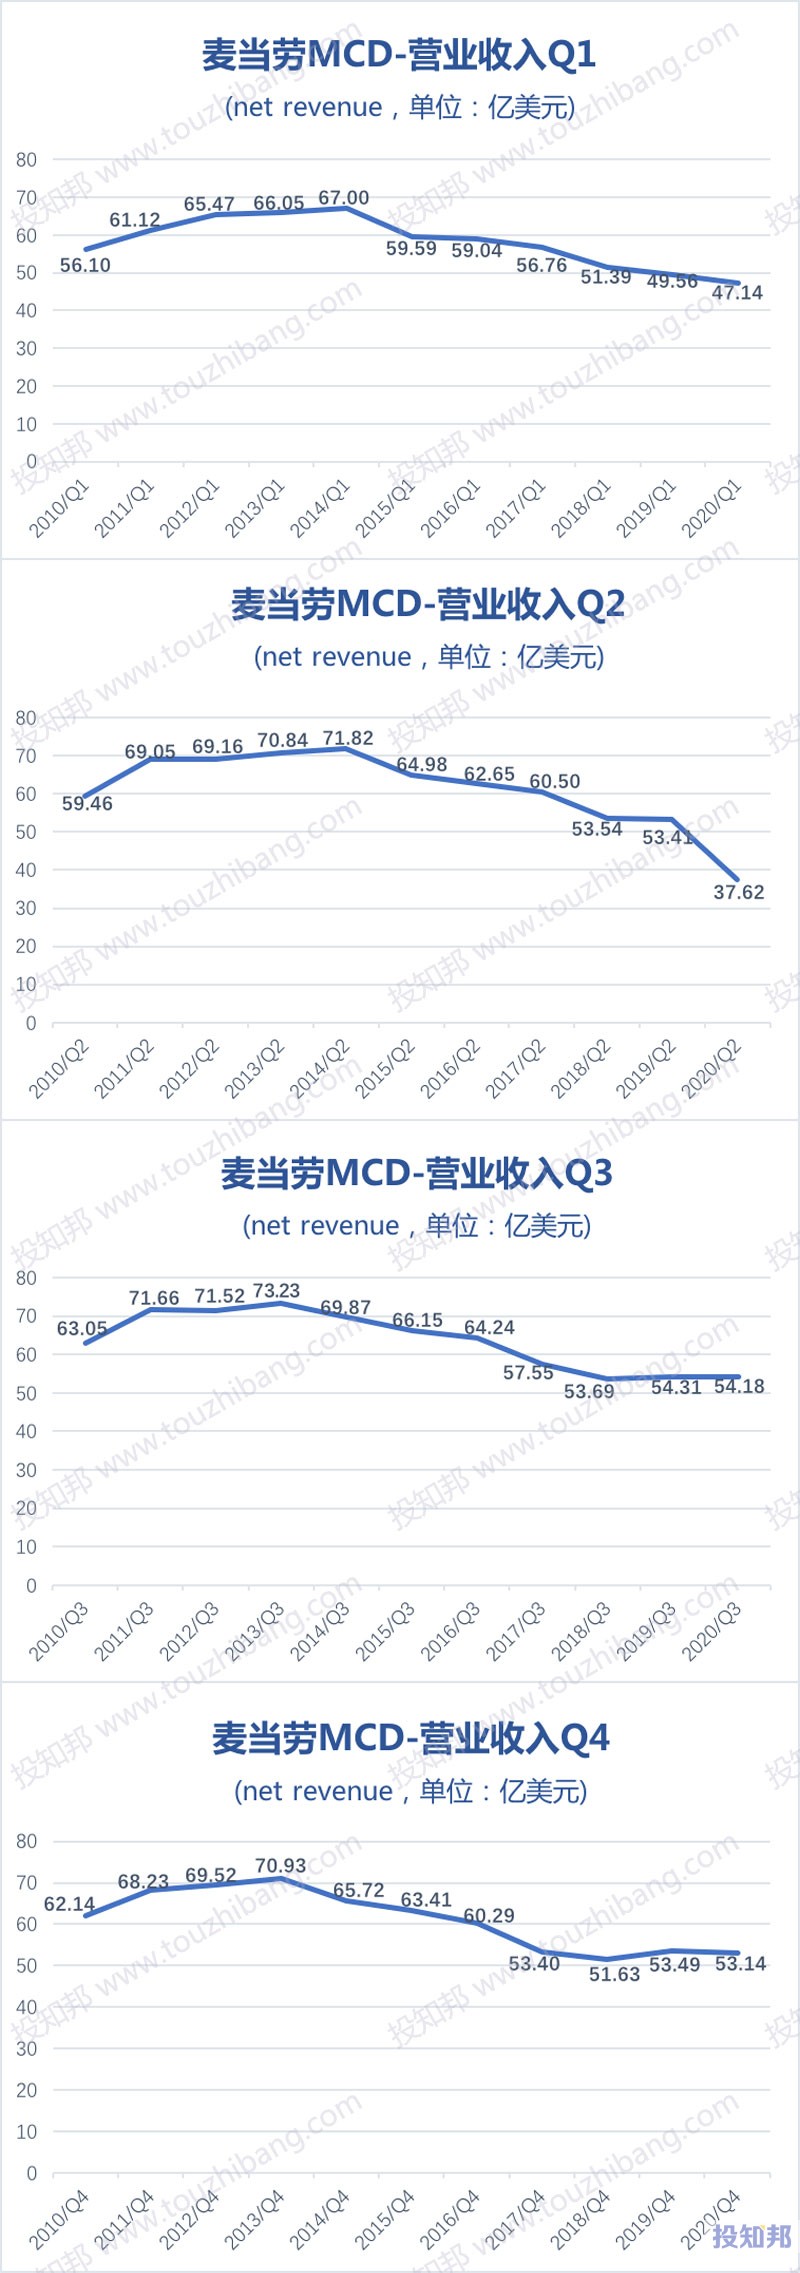 麦当劳(MCD)财报数据图示(2010年~2020年，更新)